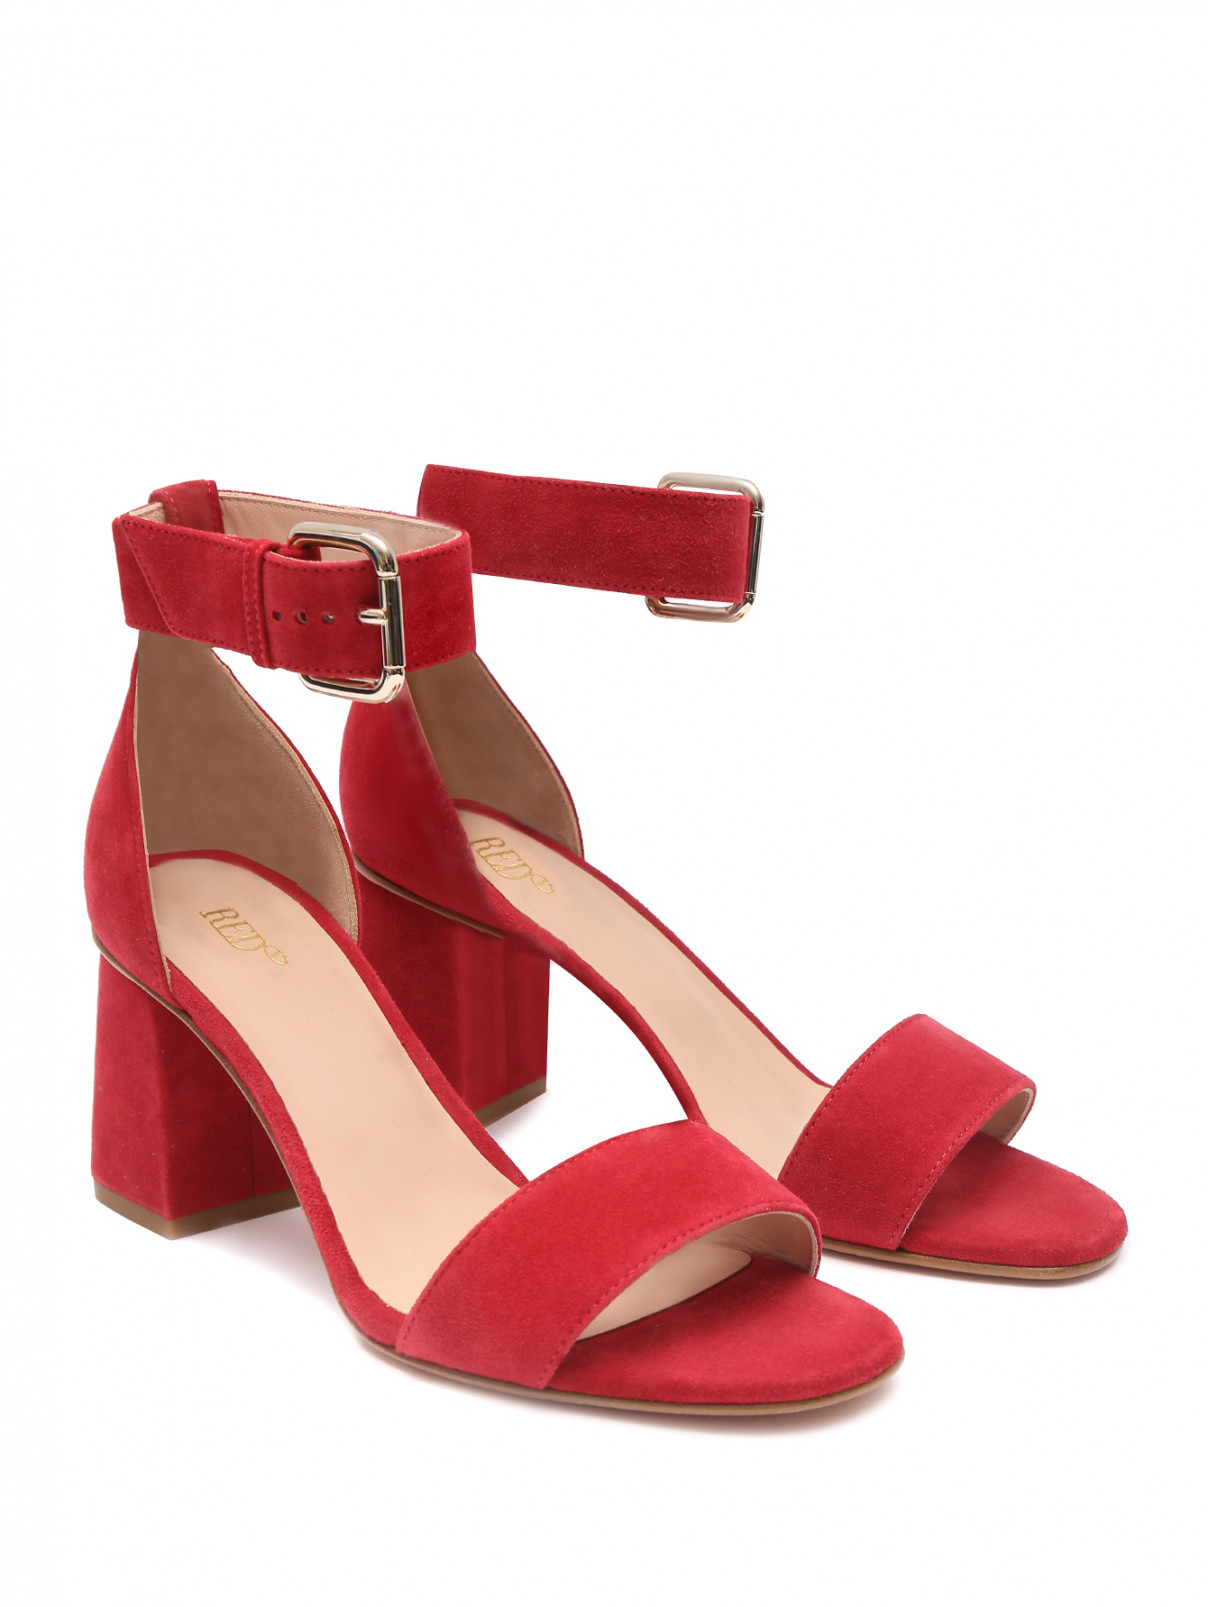 Босоножки из кожи на устойчивом каблуке RedV  –  Общий вид  – Цвет:  Красный